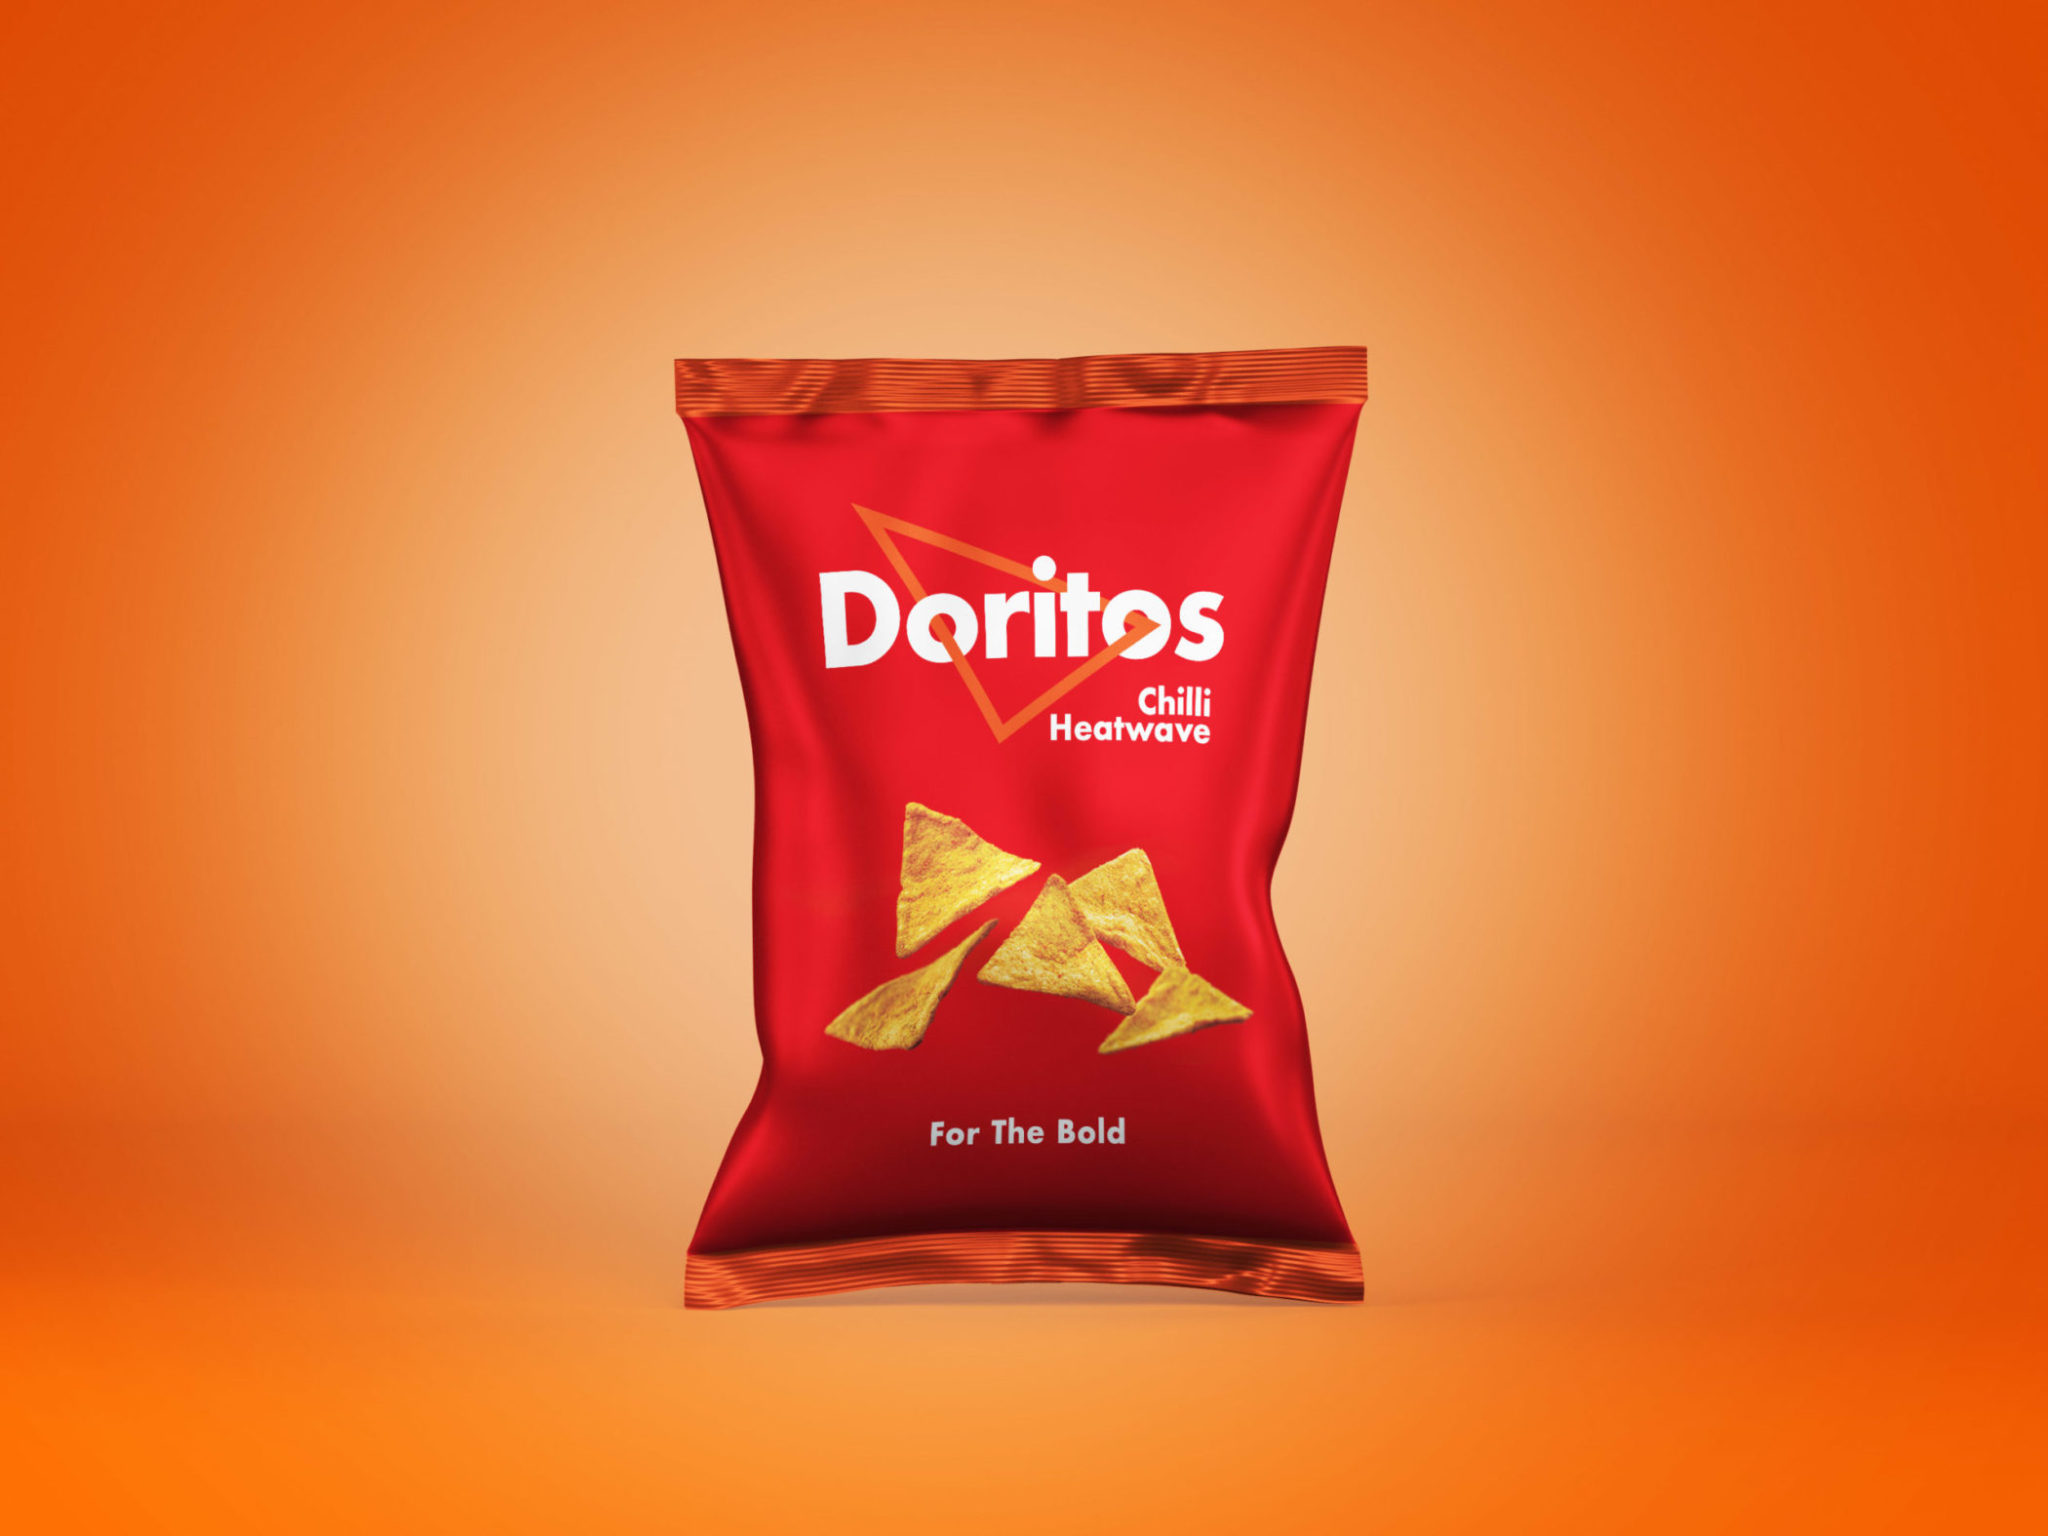 New Doritos logo